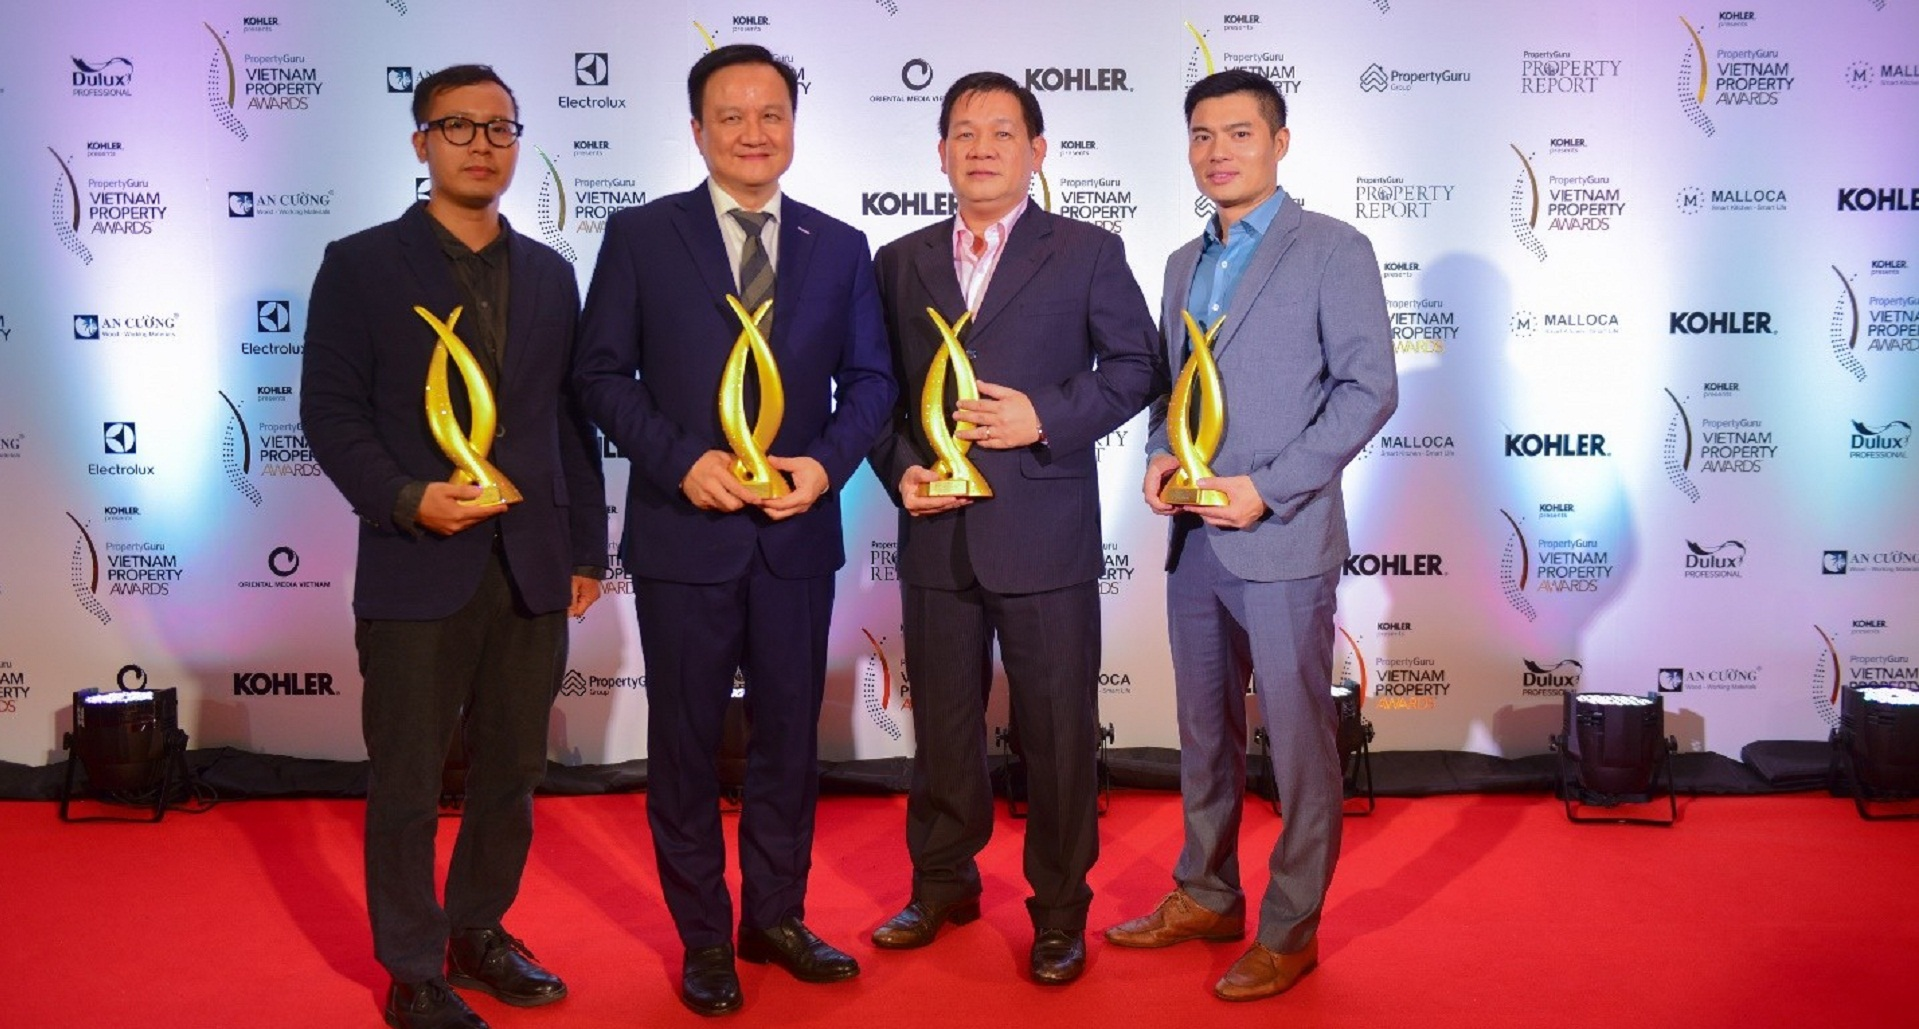 MIKGroup chiến thắng vang dội tại PropertyGuru Vietnam Property Awards 2018